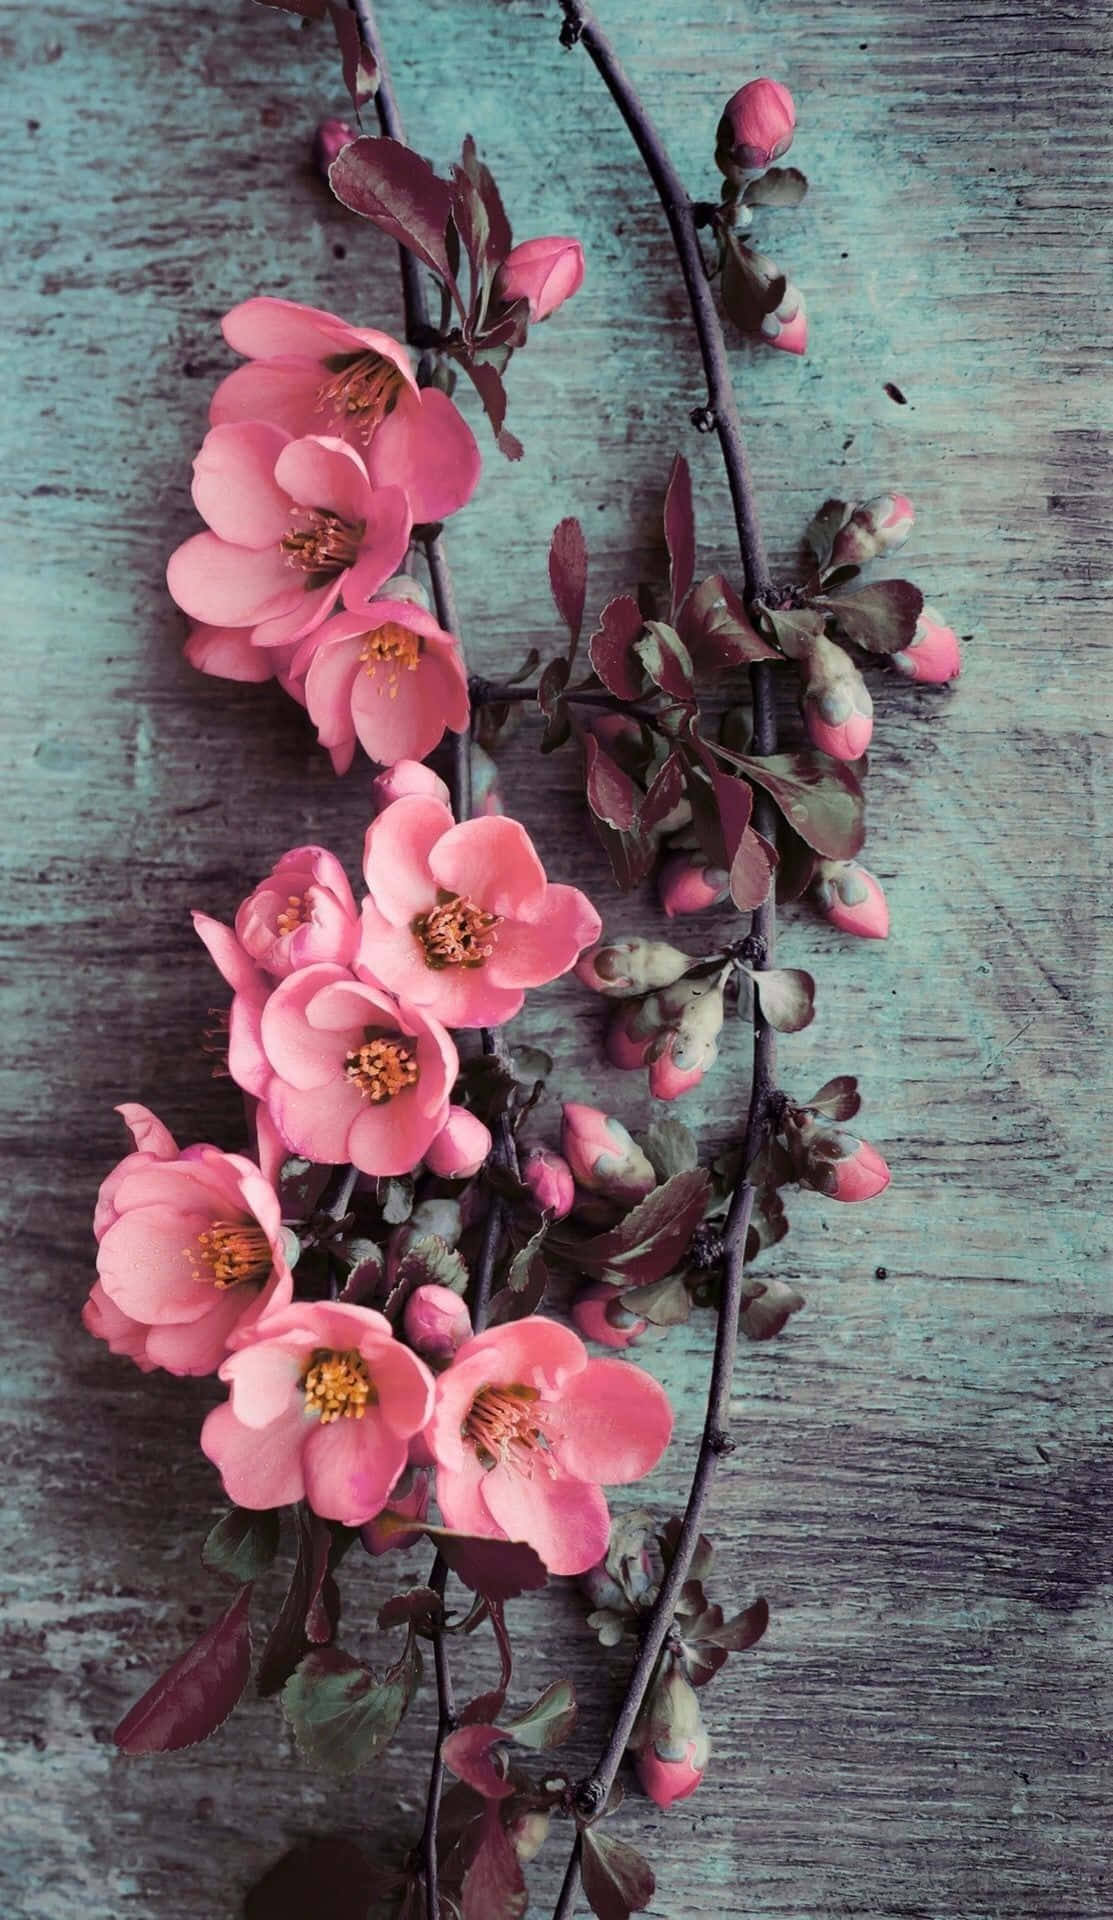 Unramo Agrupado De Hermosas Flores Rosadas.